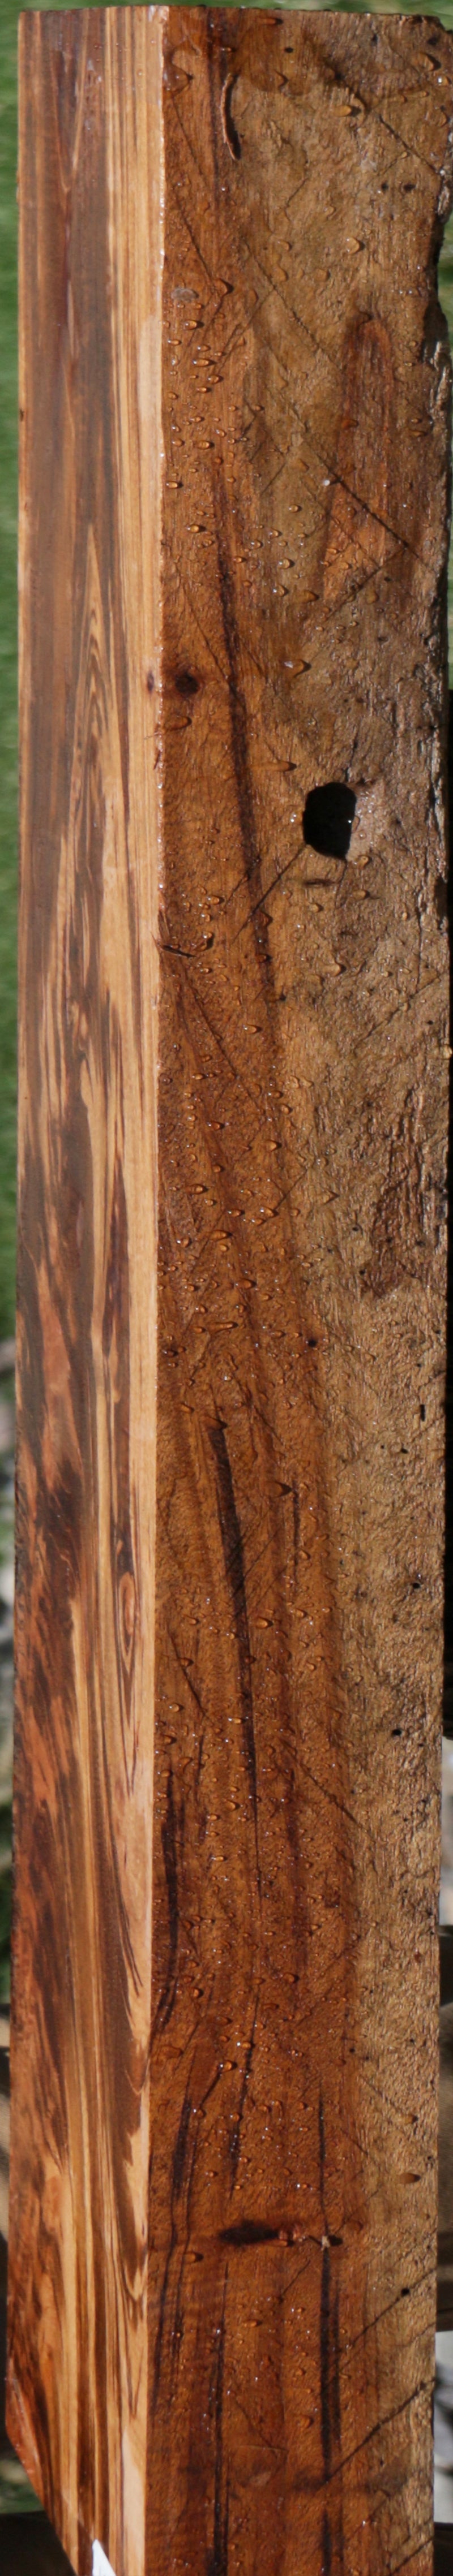 Tigerwood Lumber